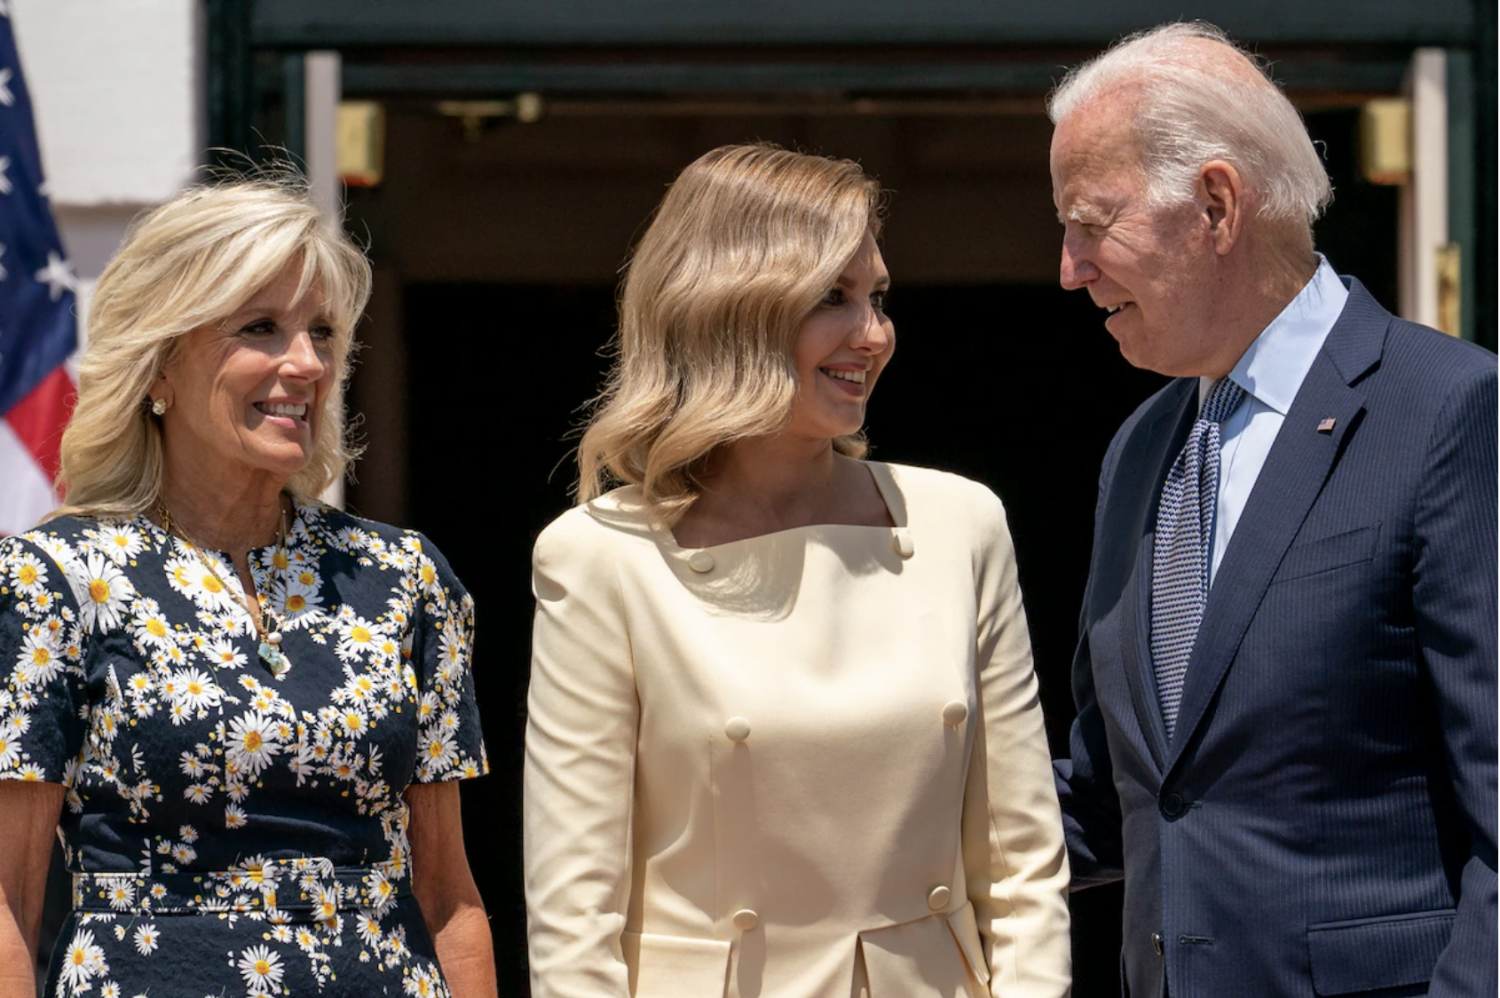 President Biden and first lady Jill Biden greet Olena Zelenska, center, at the White House in 2022. (Andrew Harnik/AP)